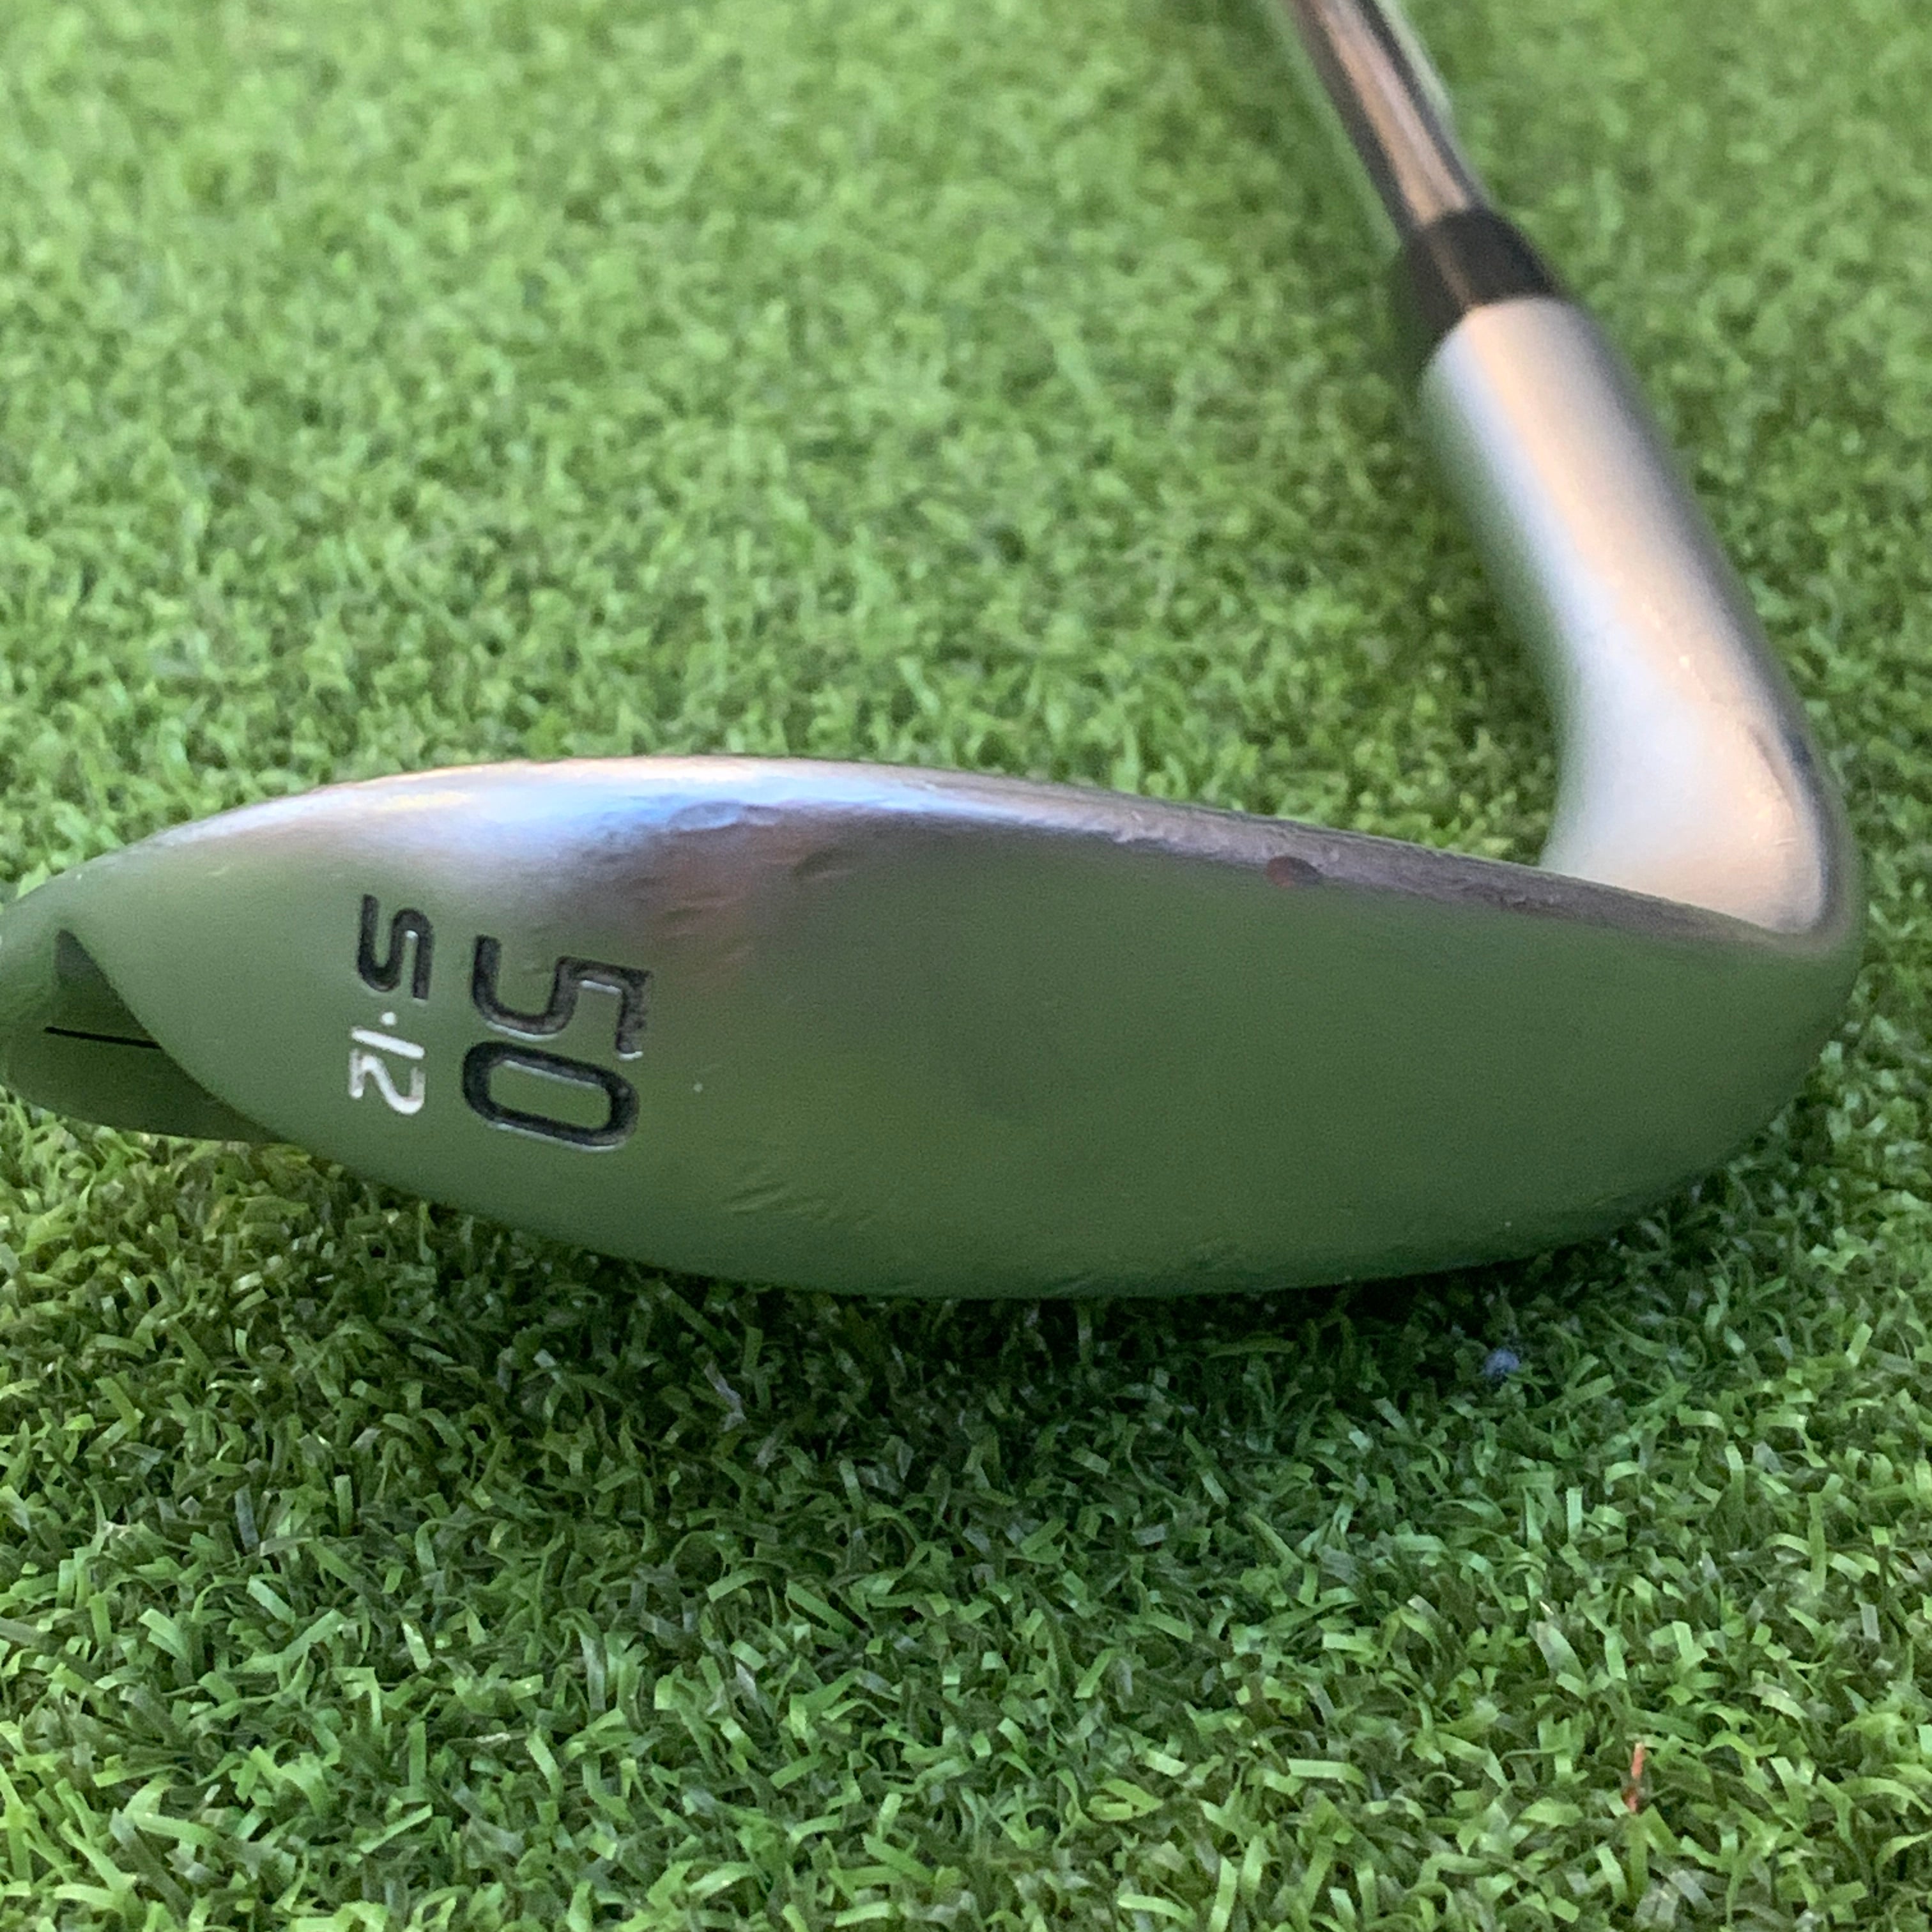 RH Ping Glide 4.0 (50) Wedge – Golf4U